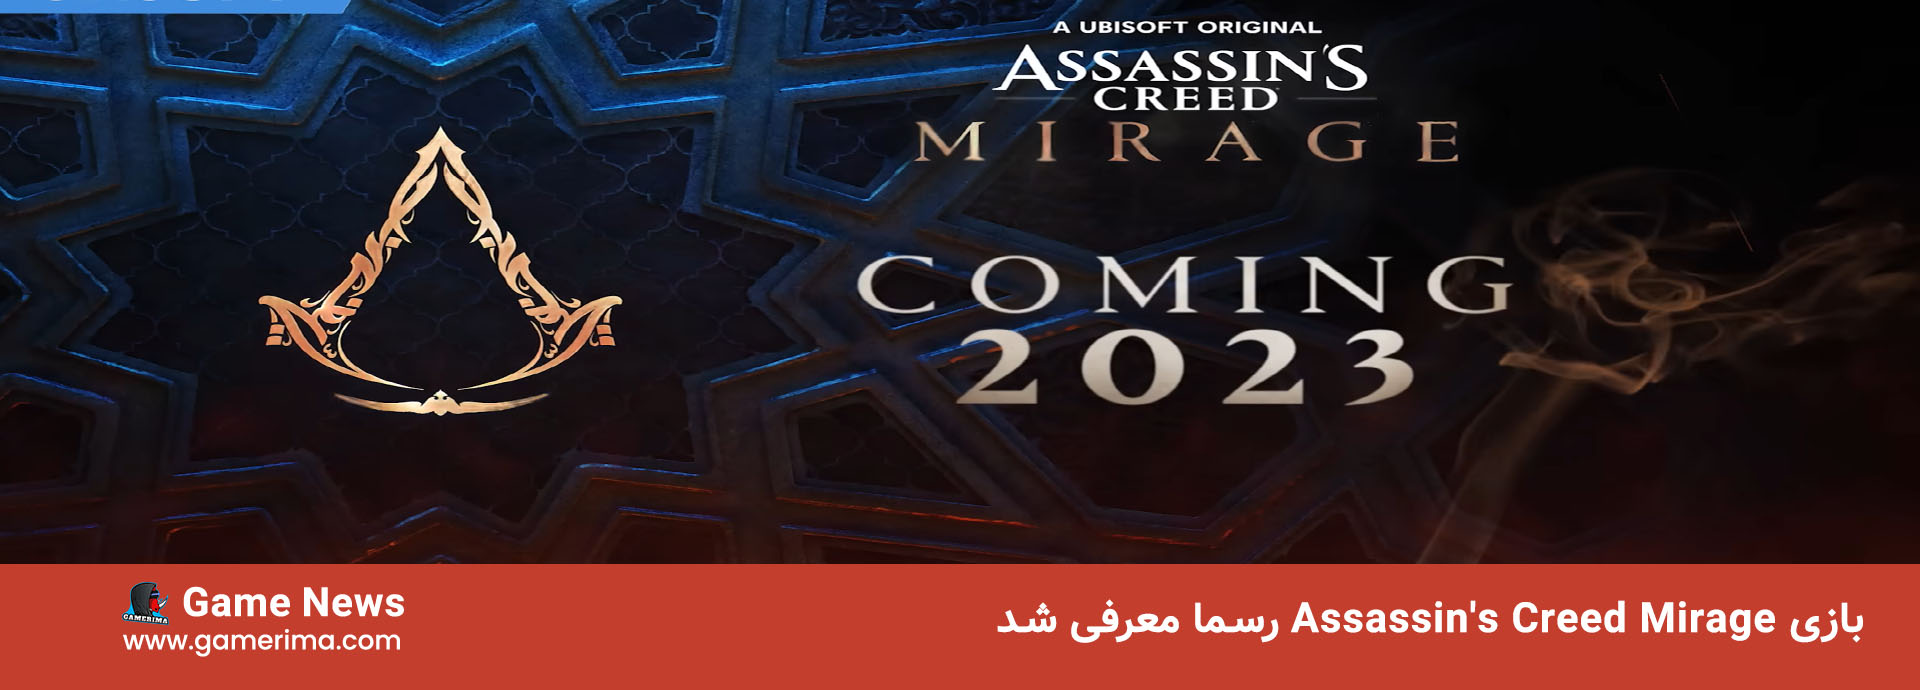 بازی Assassin’s Creed Mirage رسما معرفی شد